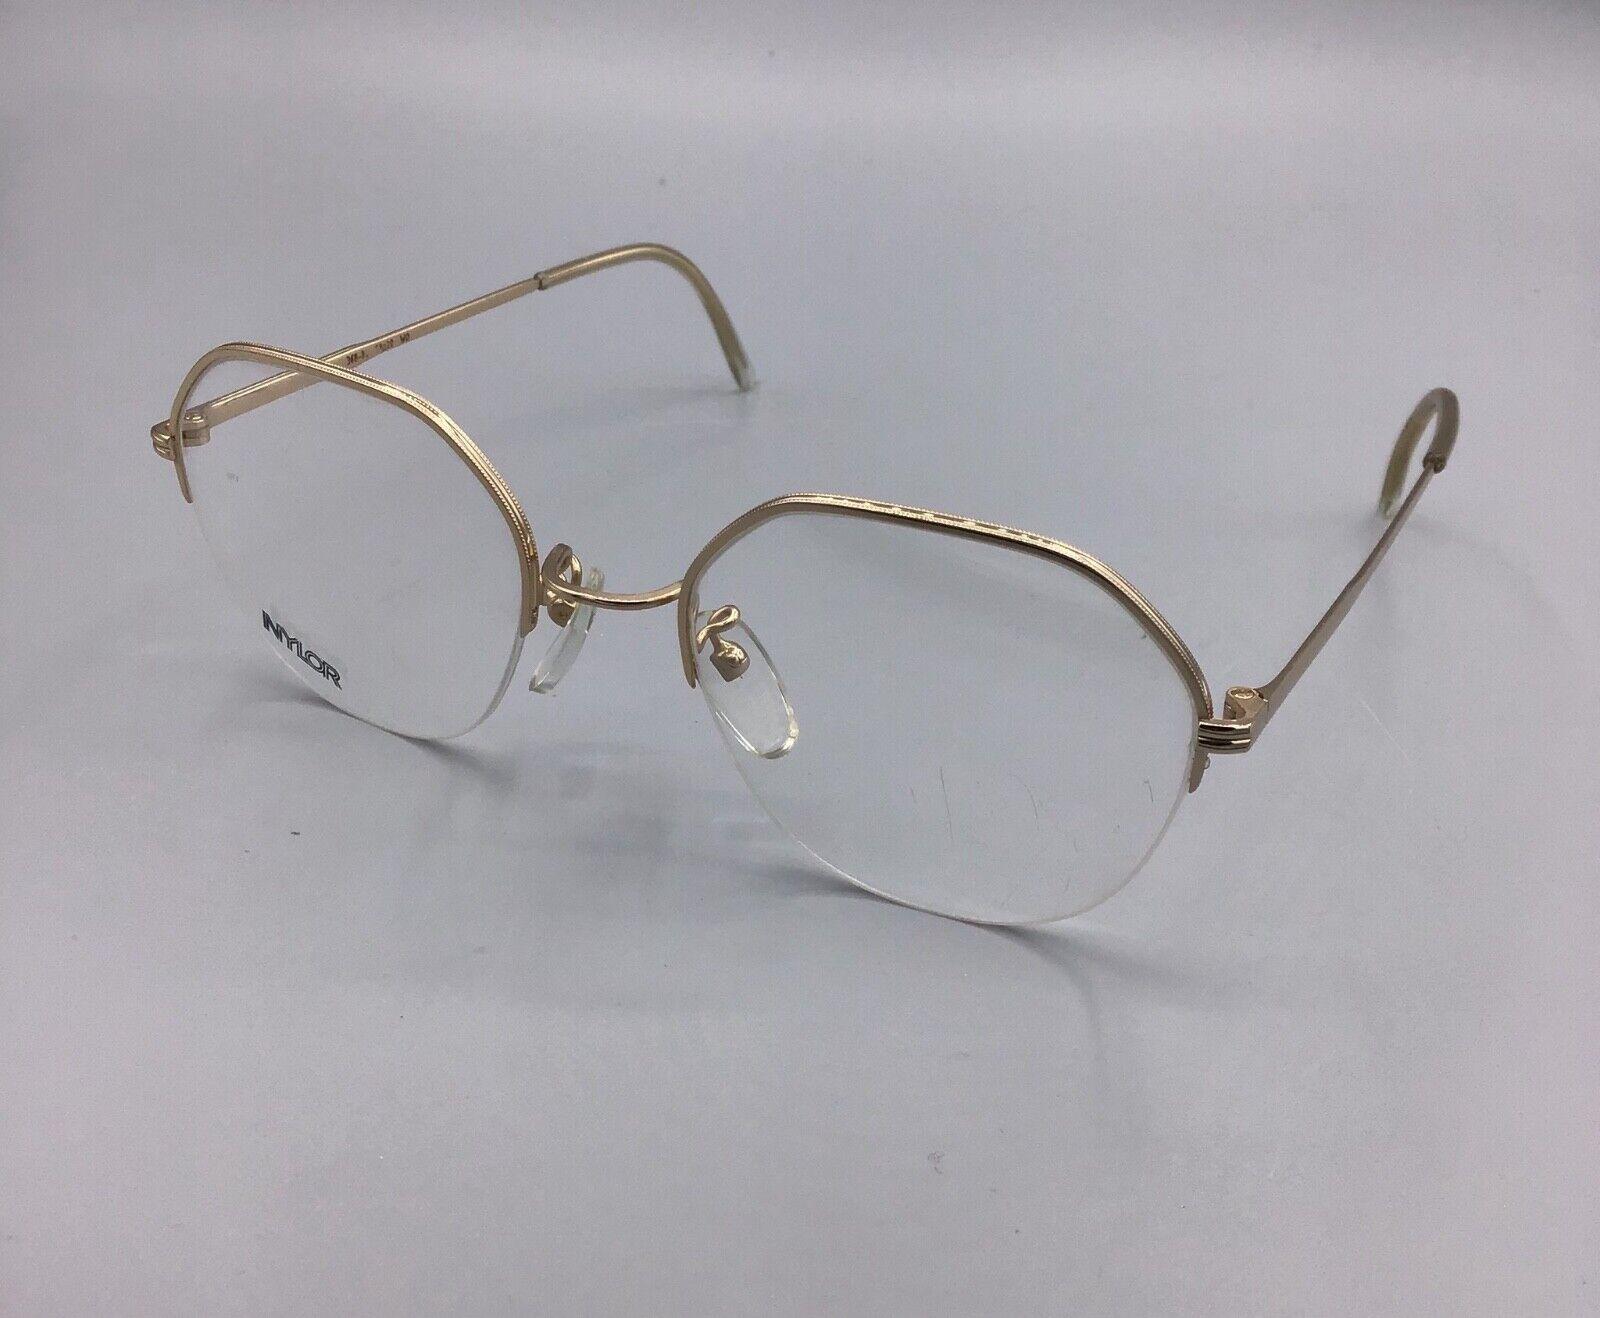 Essilor Nylor Frame France occhiale vintage Eyewear brillen lunettes gafas model 368-O WO